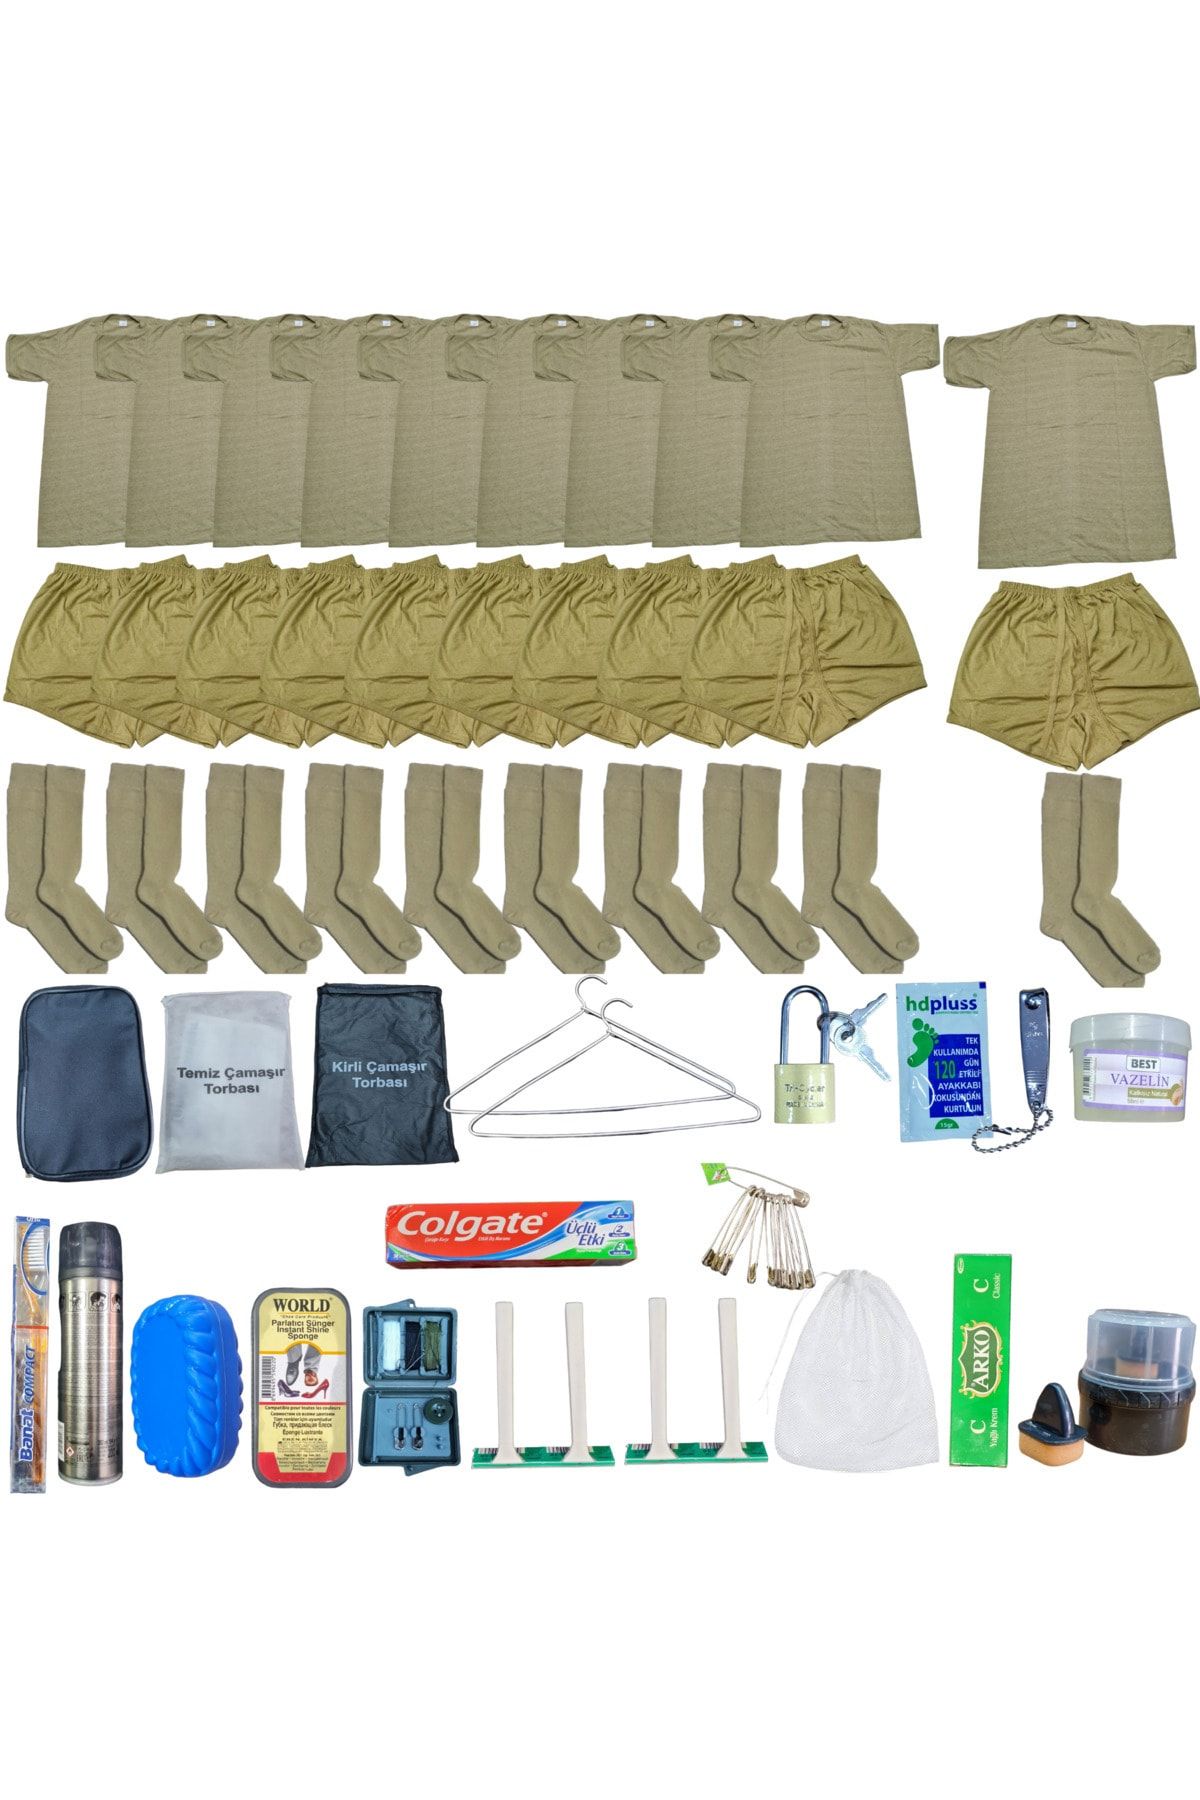 SEM-TAKTİKAL sem-taktikal 10'lu askeri çamaşır ve askeri malzeme seti fanila çamaşır filesi